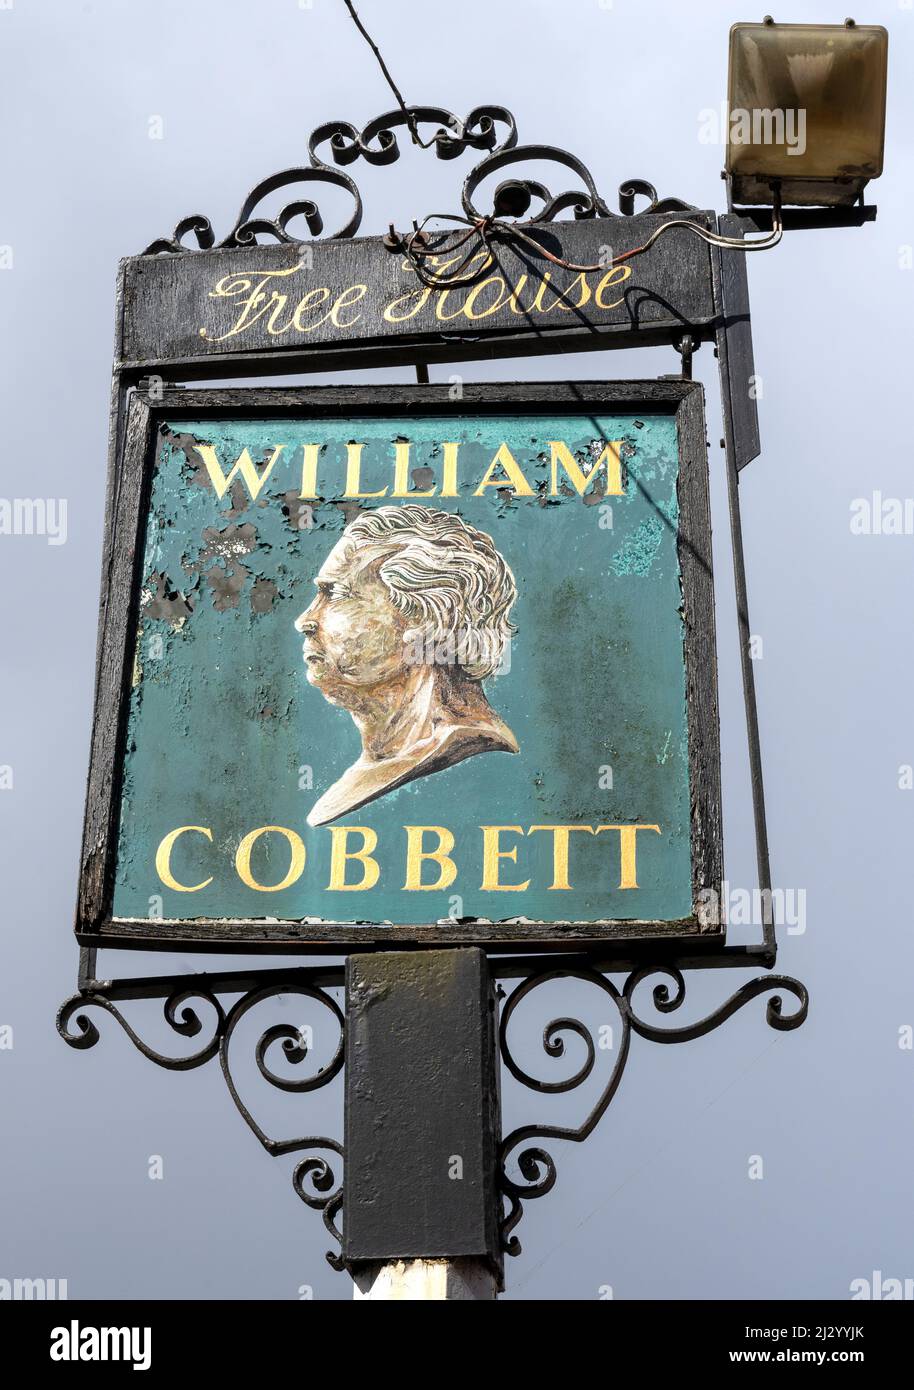 Traditional hanging pub sign at The William Cobbett public house, Bridge Square, Farnham, Surrey, England, UK Stock Photo